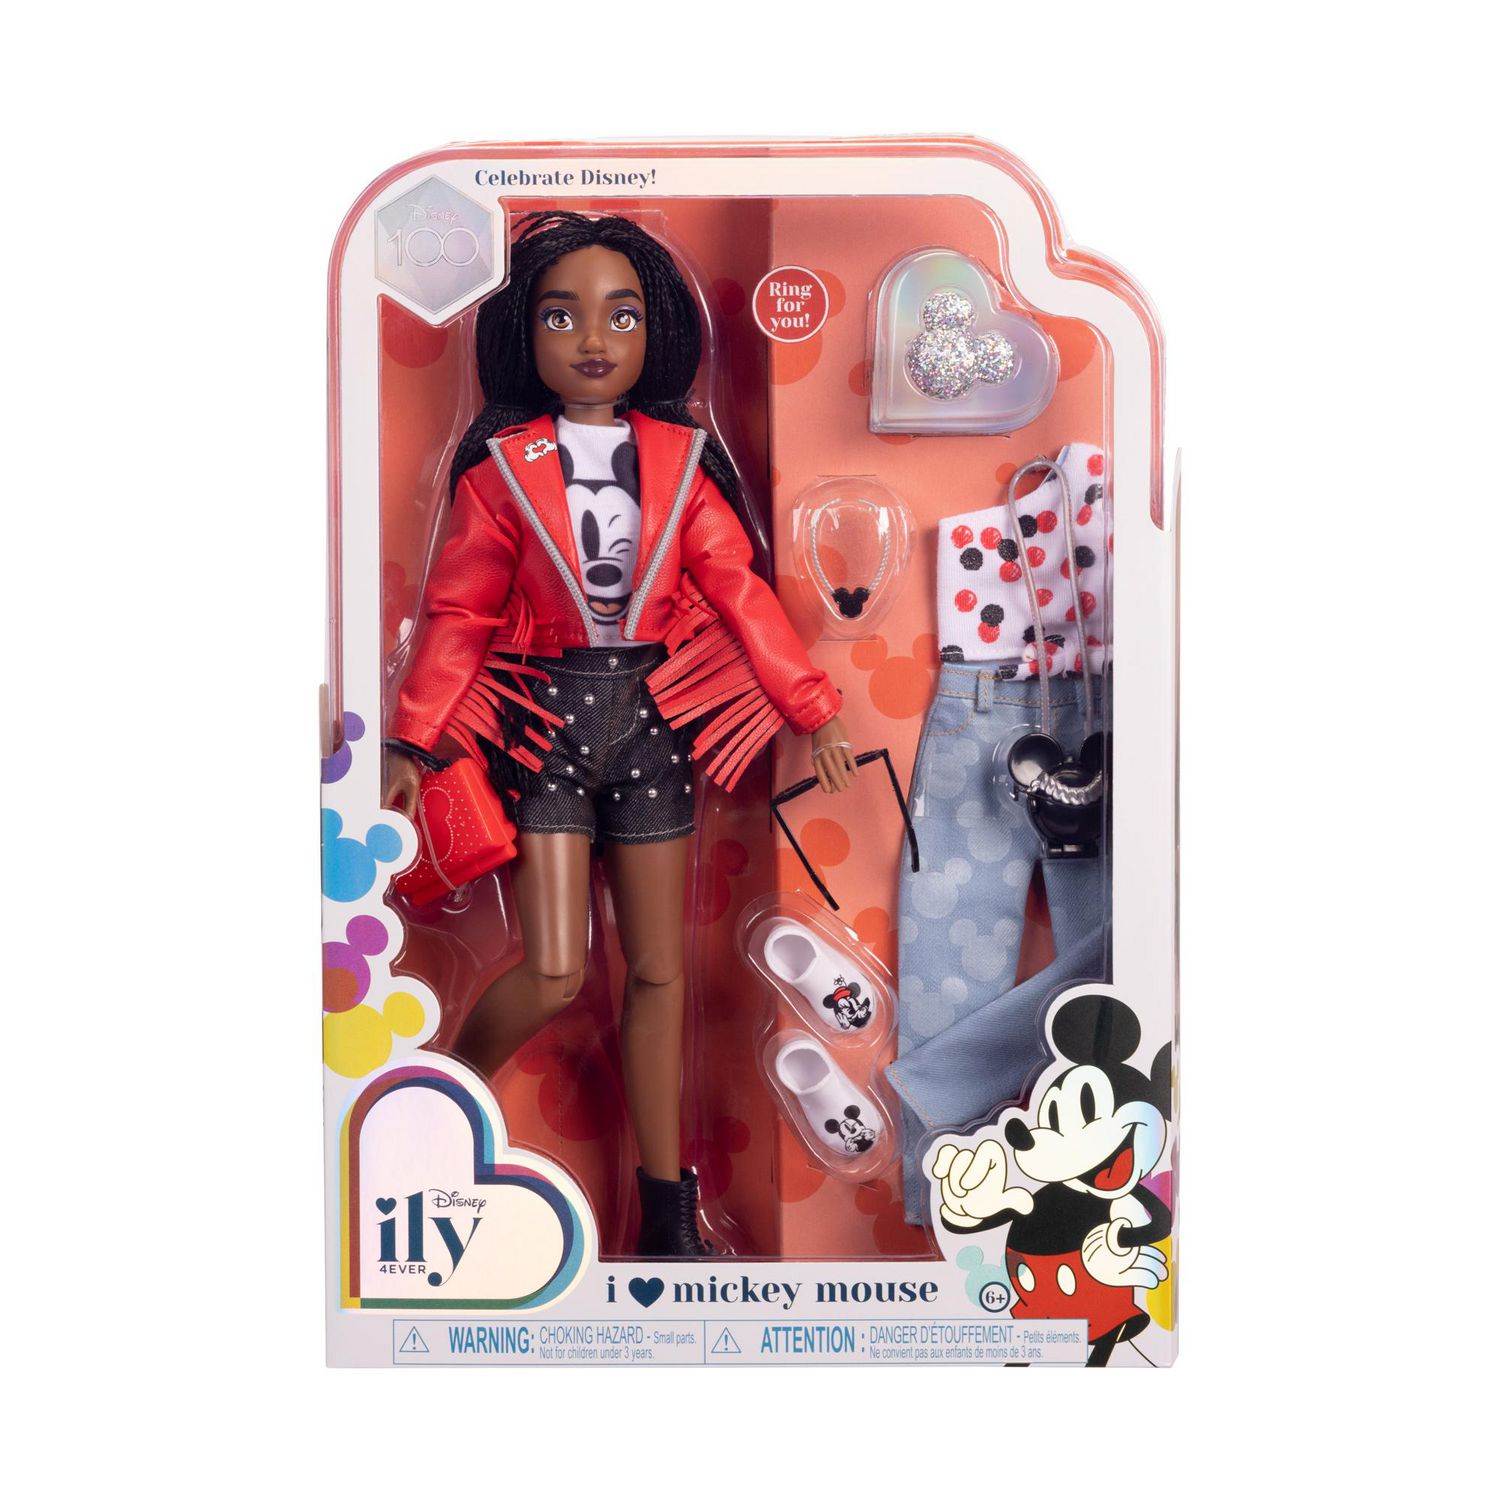 8pcs Disney Princess Action Figures Changé De Robe Poupée Enfants Fille  Jouet Cadeau